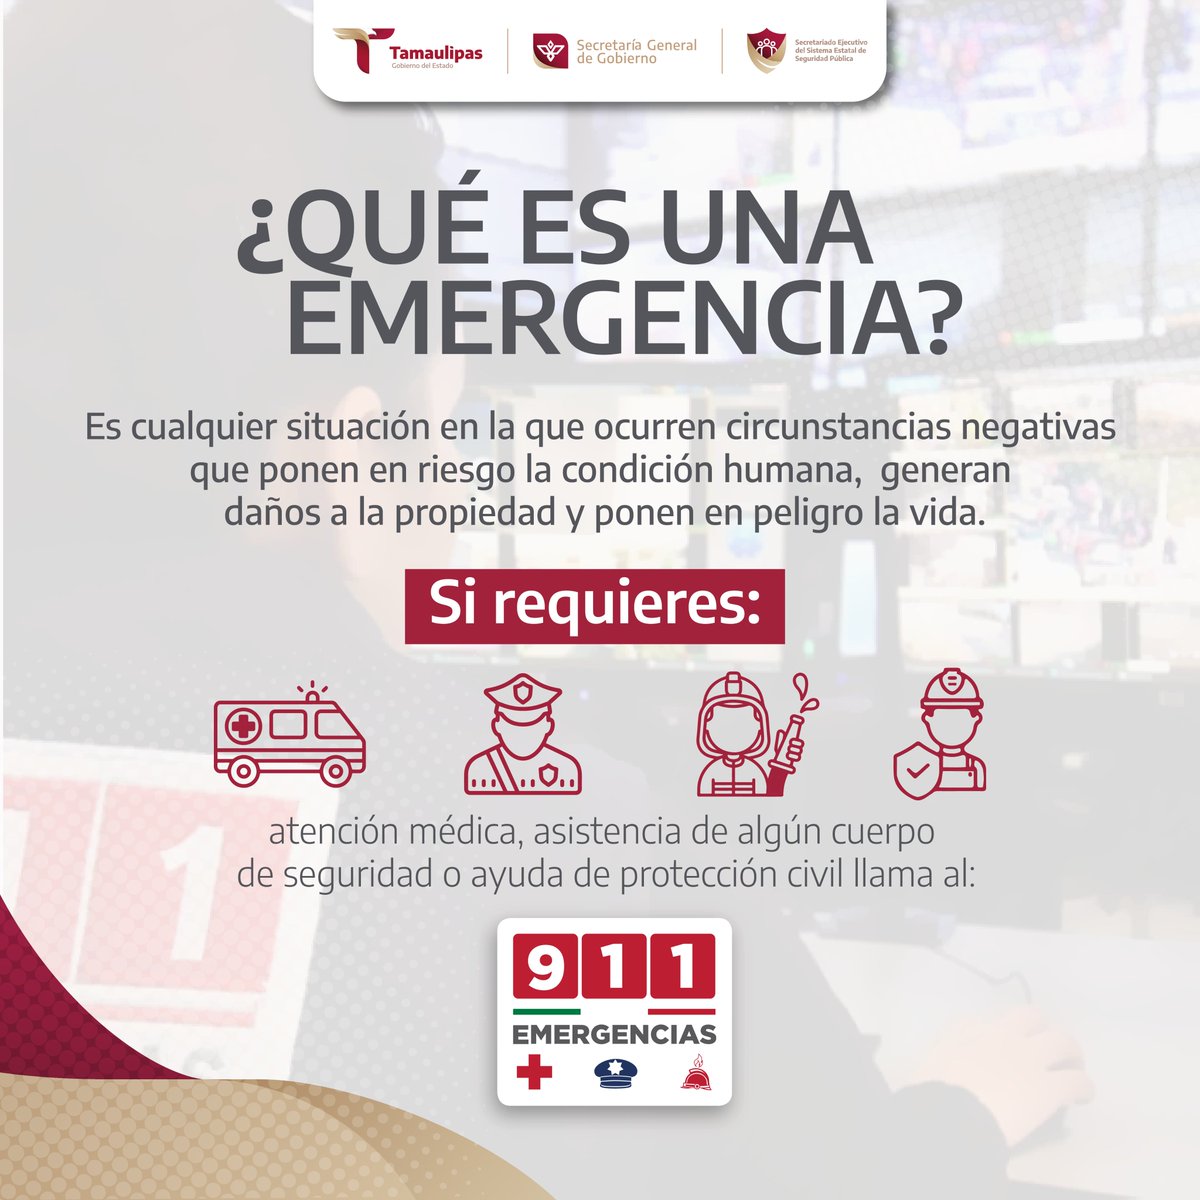 🚨 El  9-1-1 es tu línea directa de emergencia. 🚨

Marca este número en caso de requerirlo.
#ConfiaEnEl911